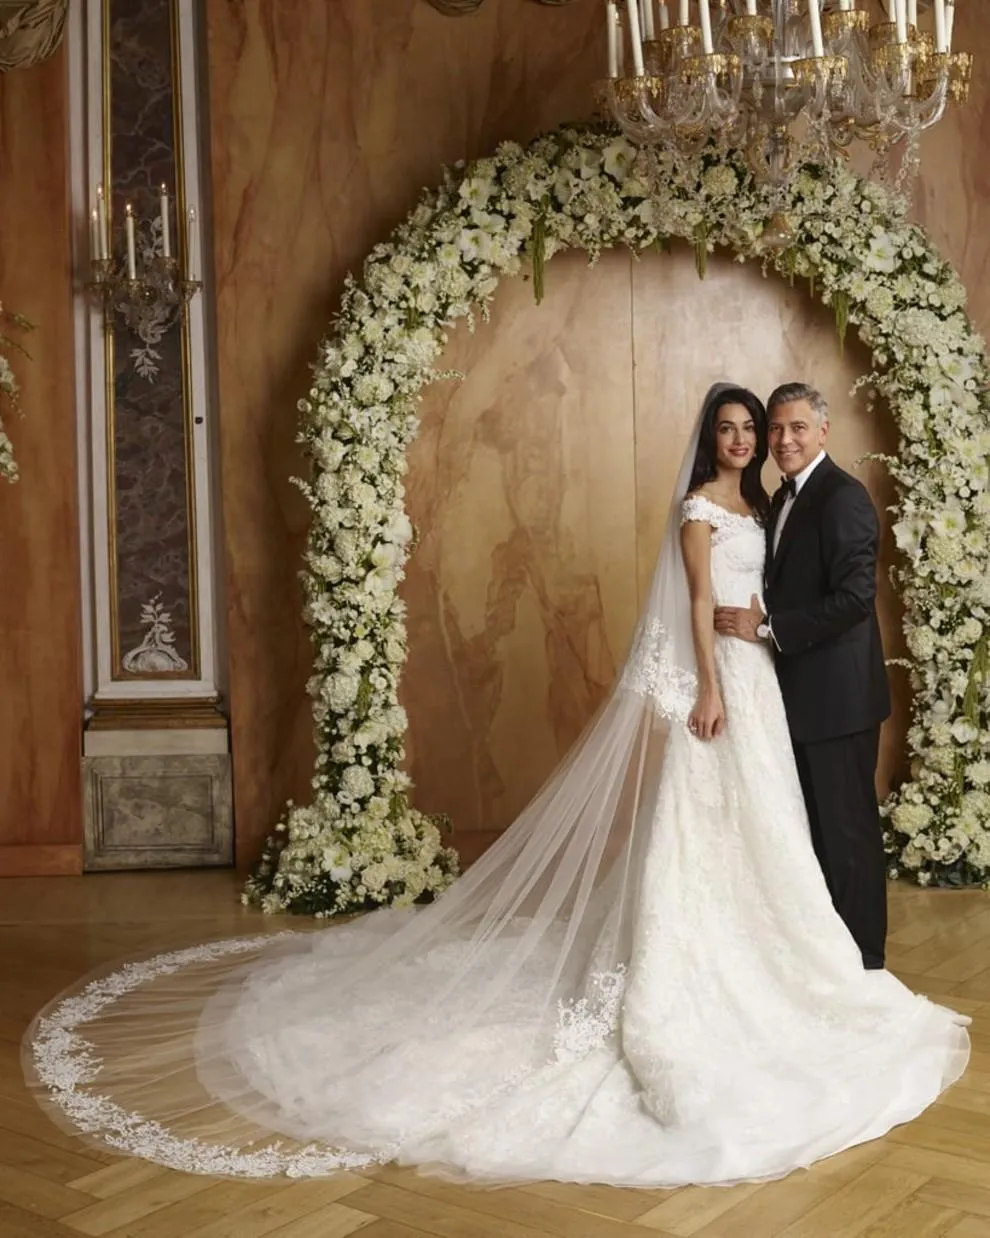 Весілля Амаль і Джорджа Клуні